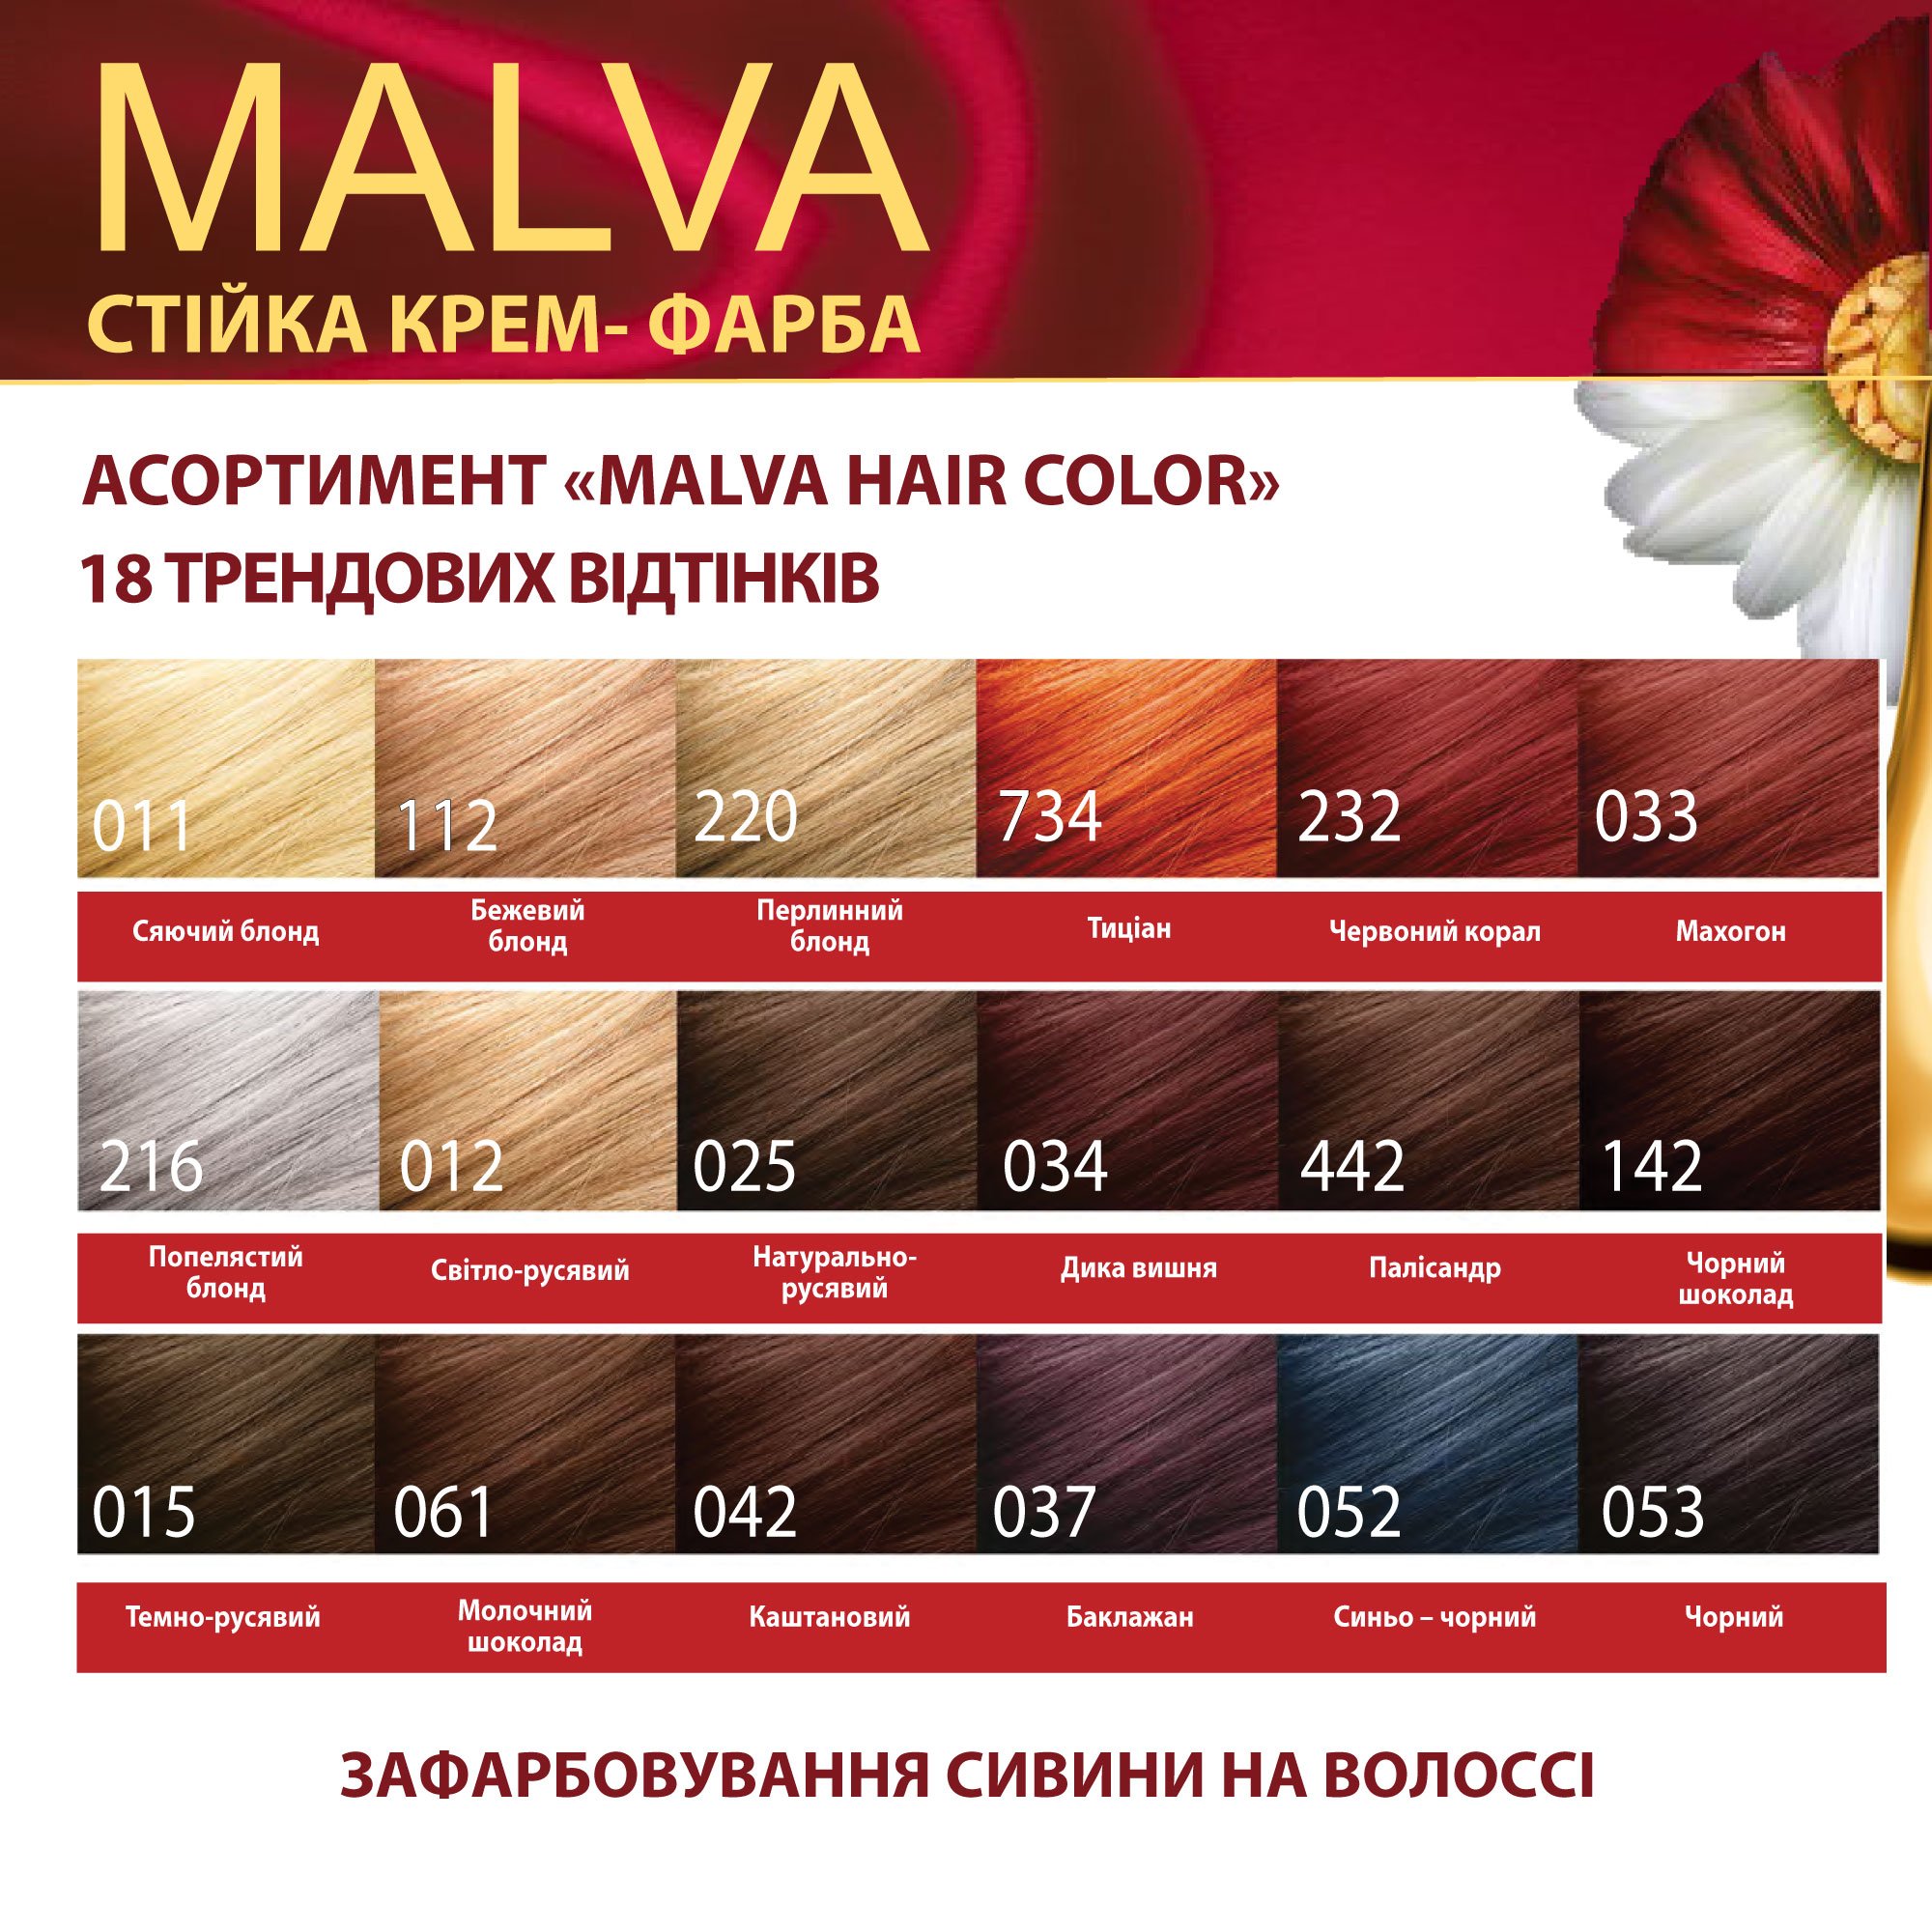 Крем-фарба для волосся Acme Color Malva, відтінок 216 (Попелястий блонд), 95 мл - фото 6